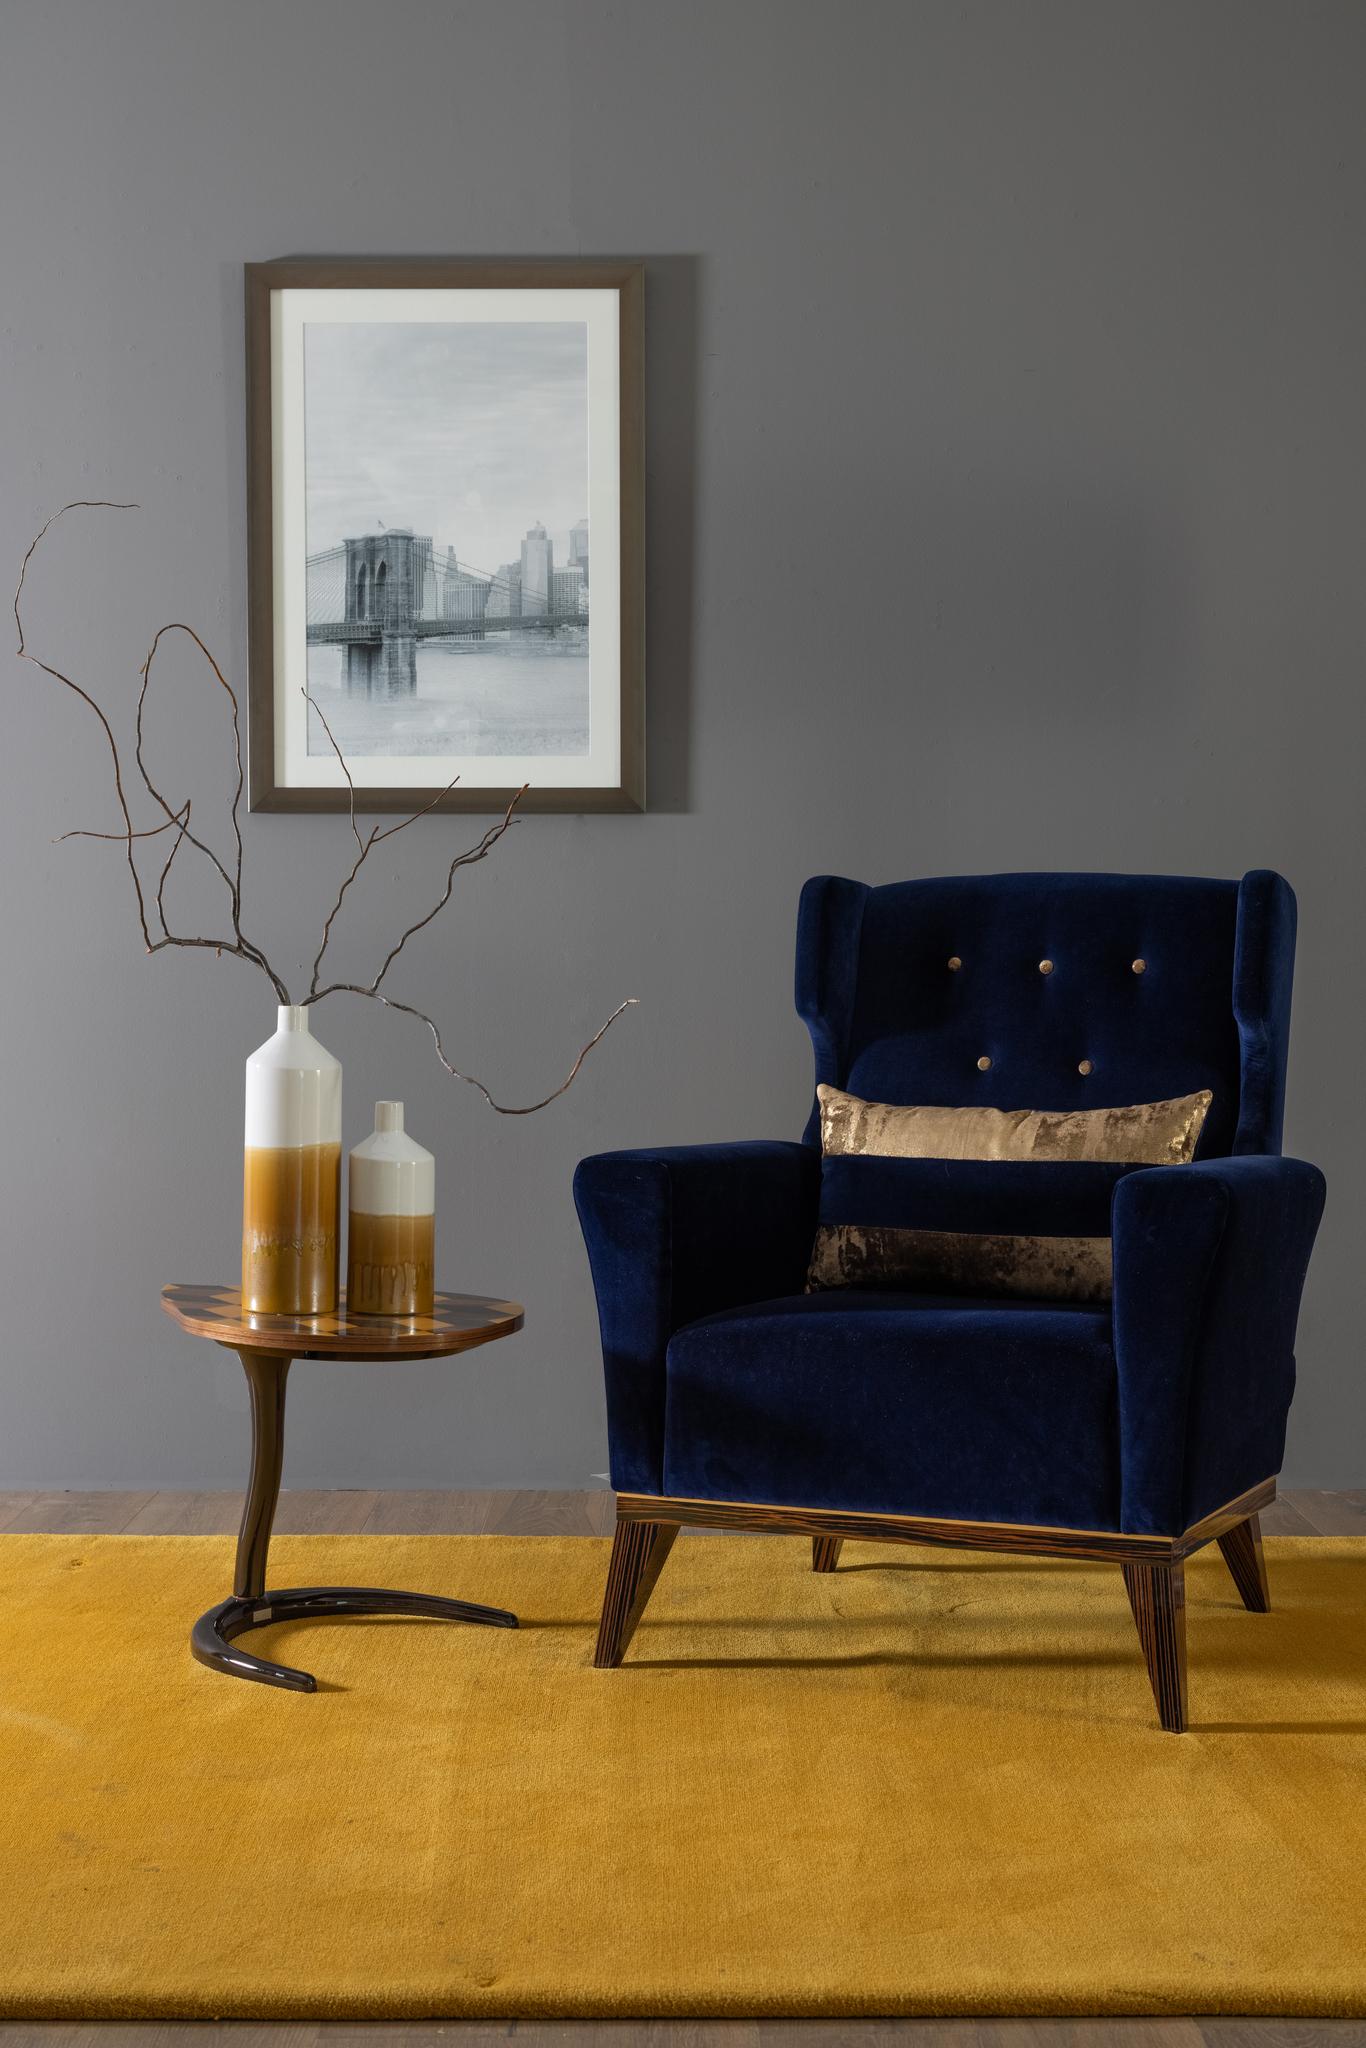 Genebra Sessel, Modern Collection'S, handgefertigt in Portugal - Europa von GF Modern.

Der Genebra-Sessel wurde entworfen, um Ihrem Wohnzimmer einen raffinierten Vintage-Look zu verleihen. Der Sessel ist mit dunkelblauem Samt gepolstert und mit